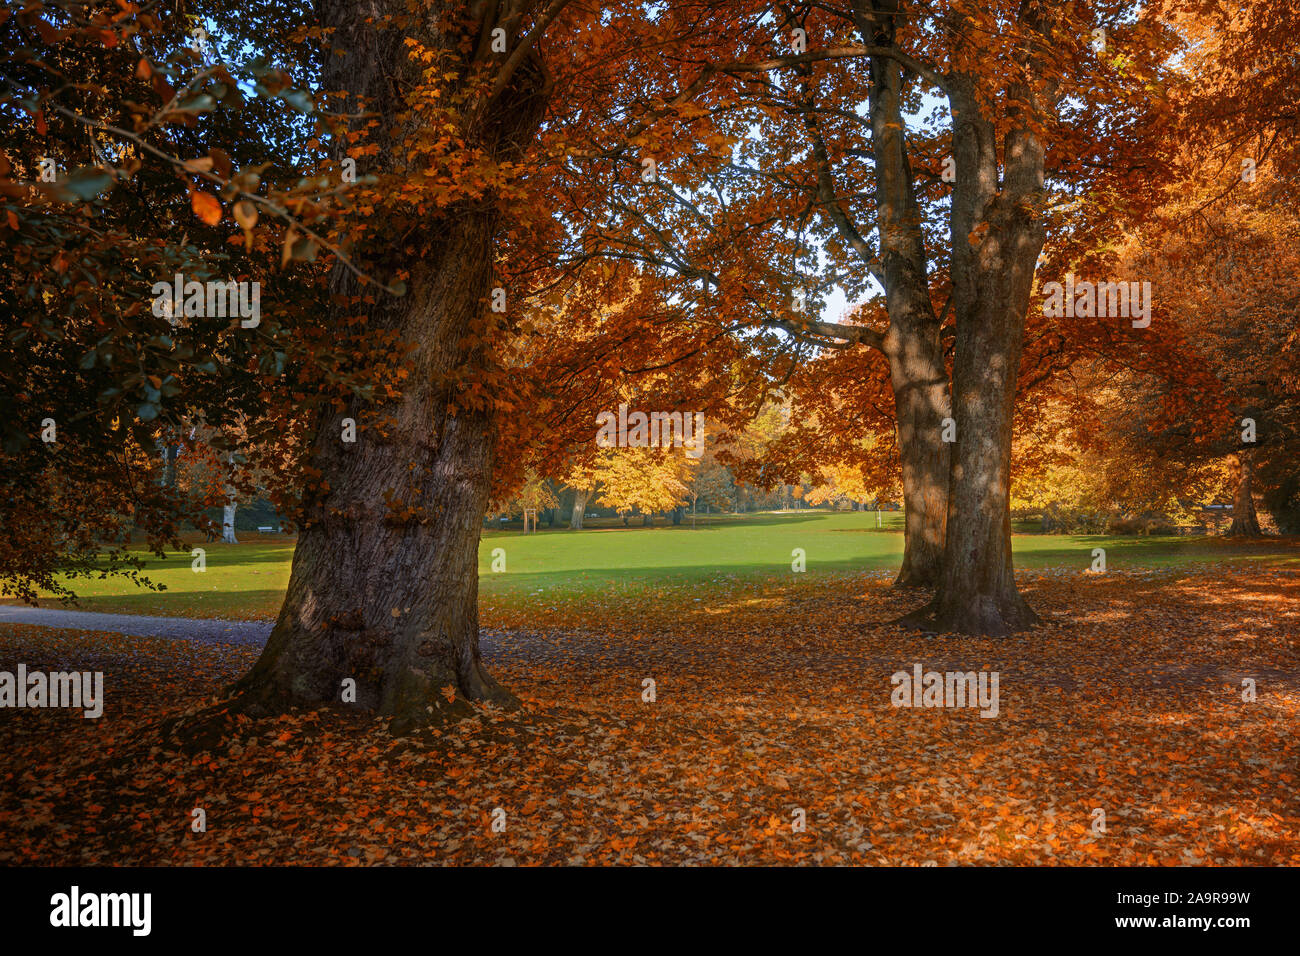 Couleurs d'automne rouge et or sur le feuillage des arbres dans un parc, paysage de saison Banque D'Images